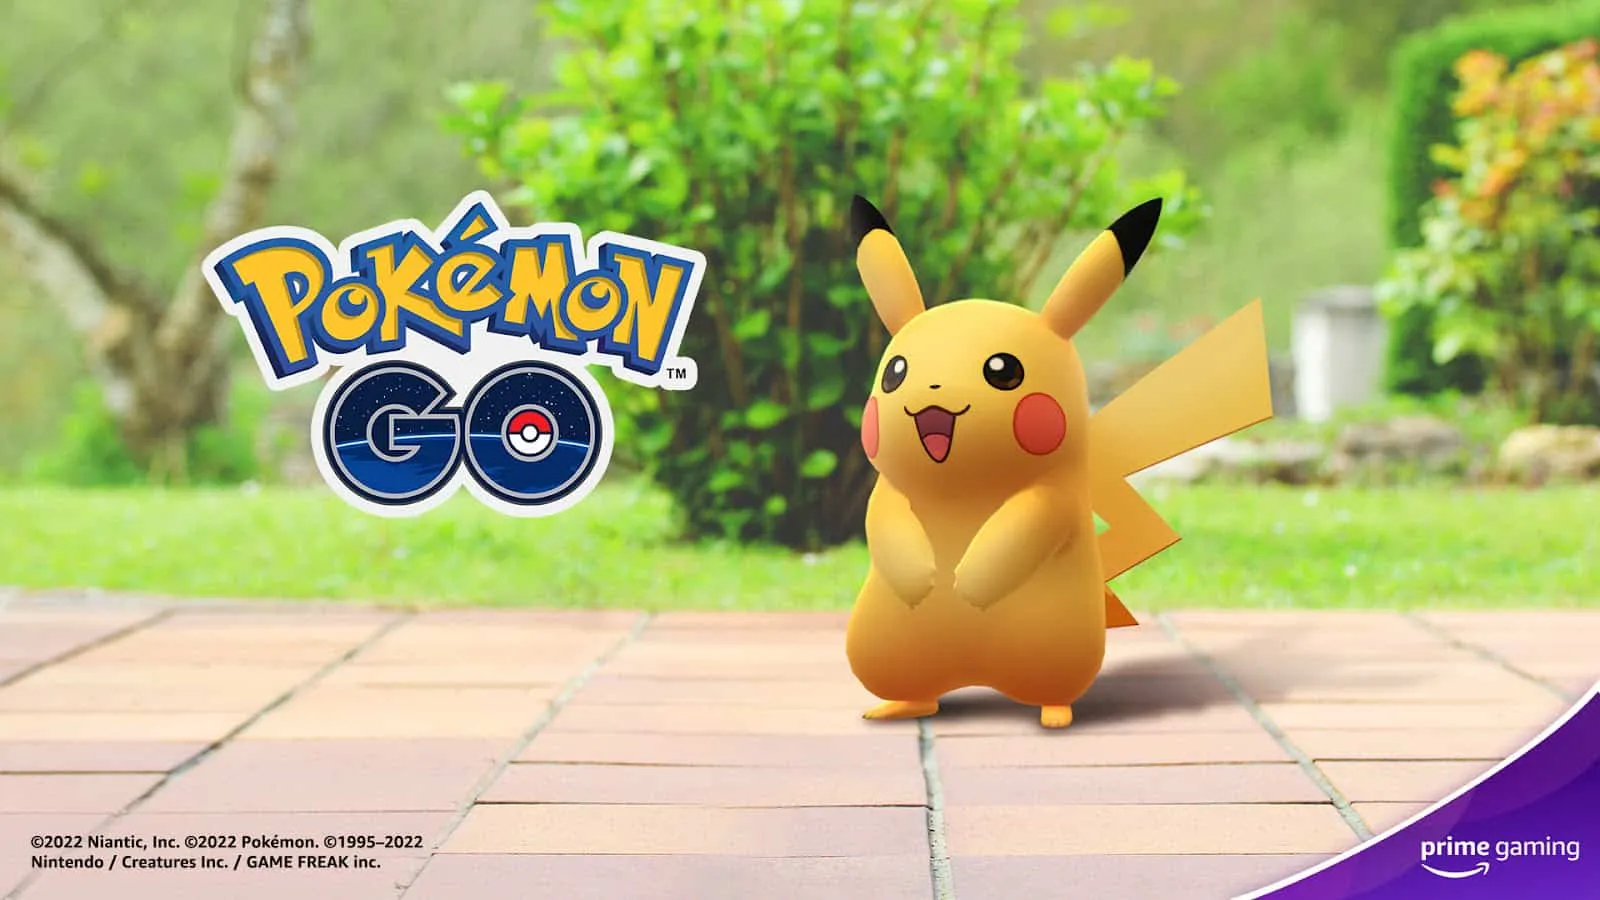 Pokémon Go Prime Gaming の報酬制度のポスター